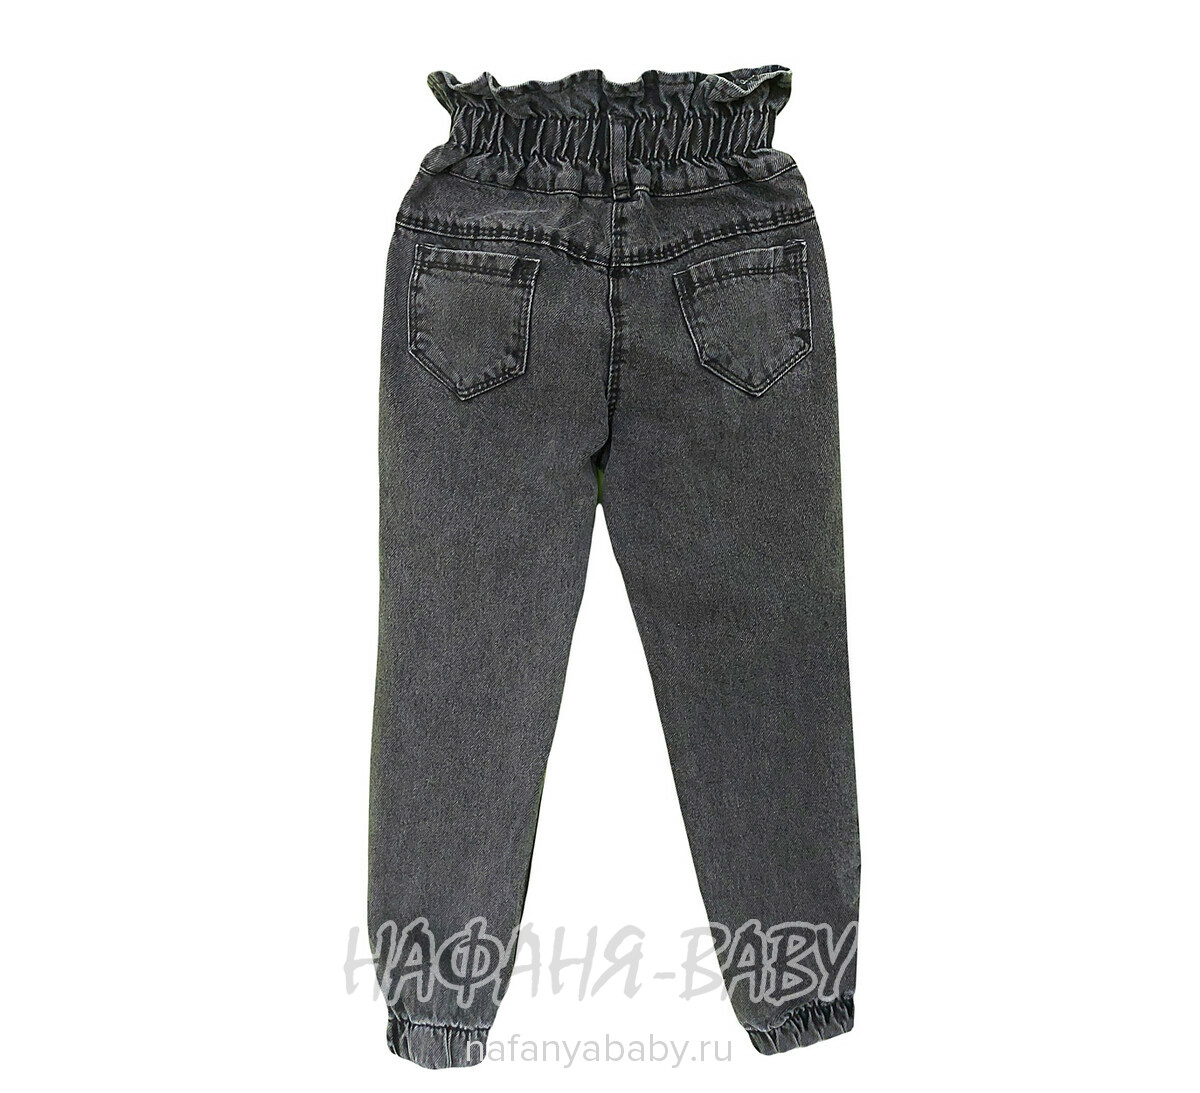 Джинсы YAVRUCAK Jeans арт: 7205 для девочки от 3 до 7 лет, цвет черный, оптом Турция